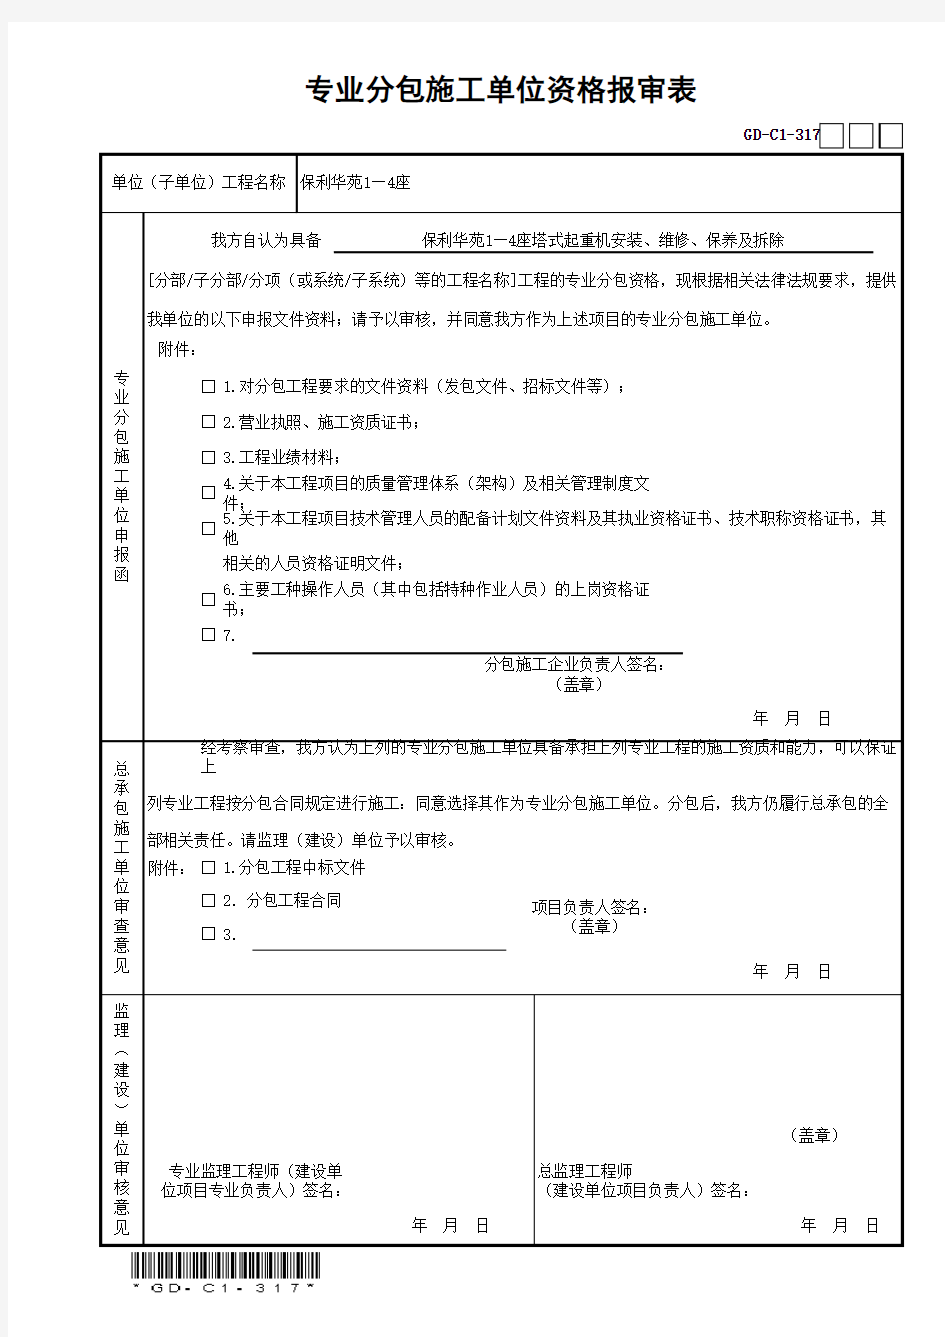 专业分包施工单位资格报审表GD-C1-317